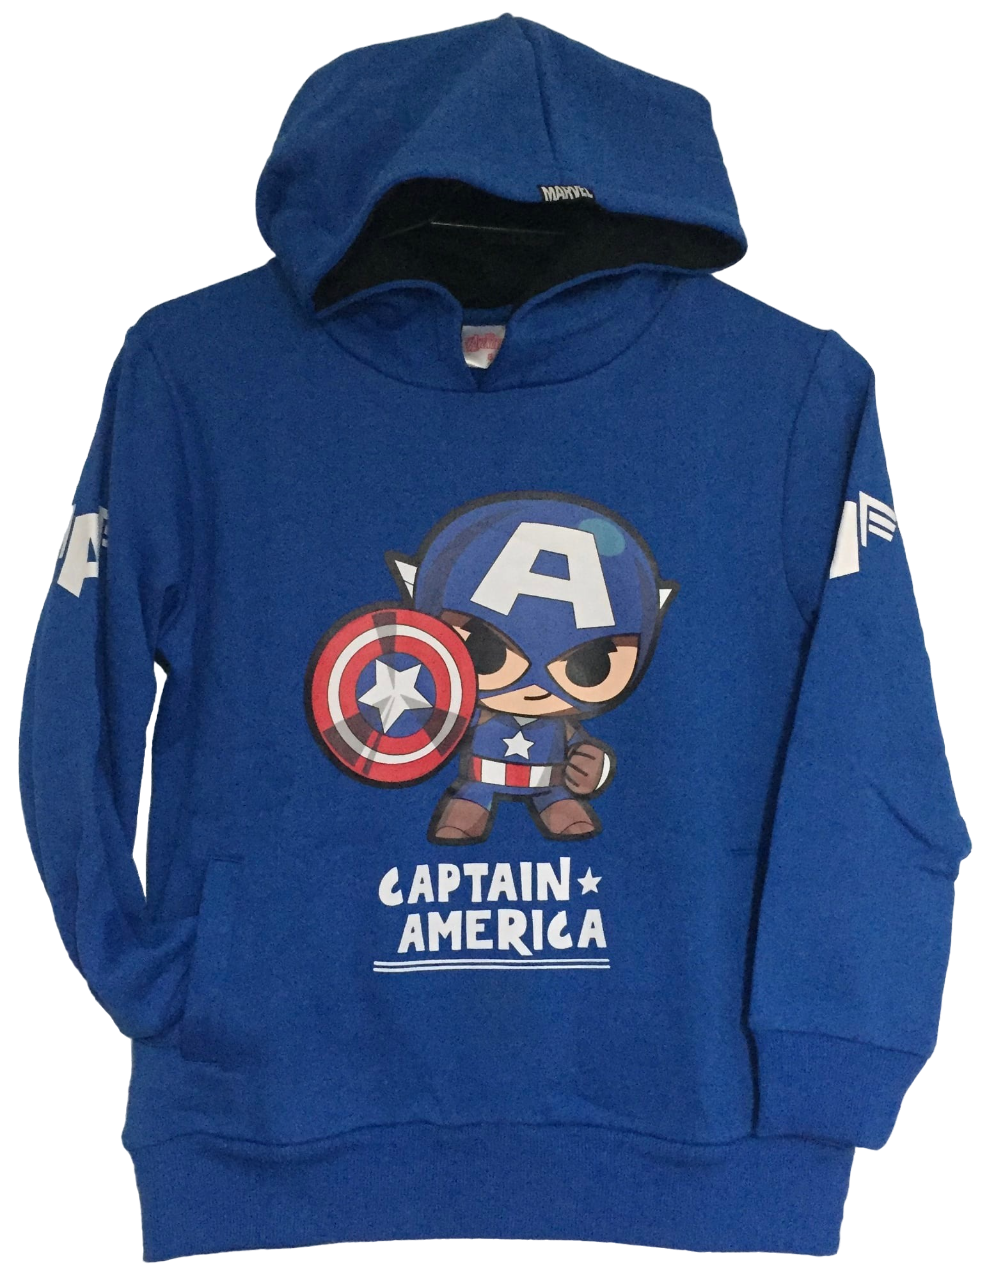 Poleron Capitán América - Talla 8